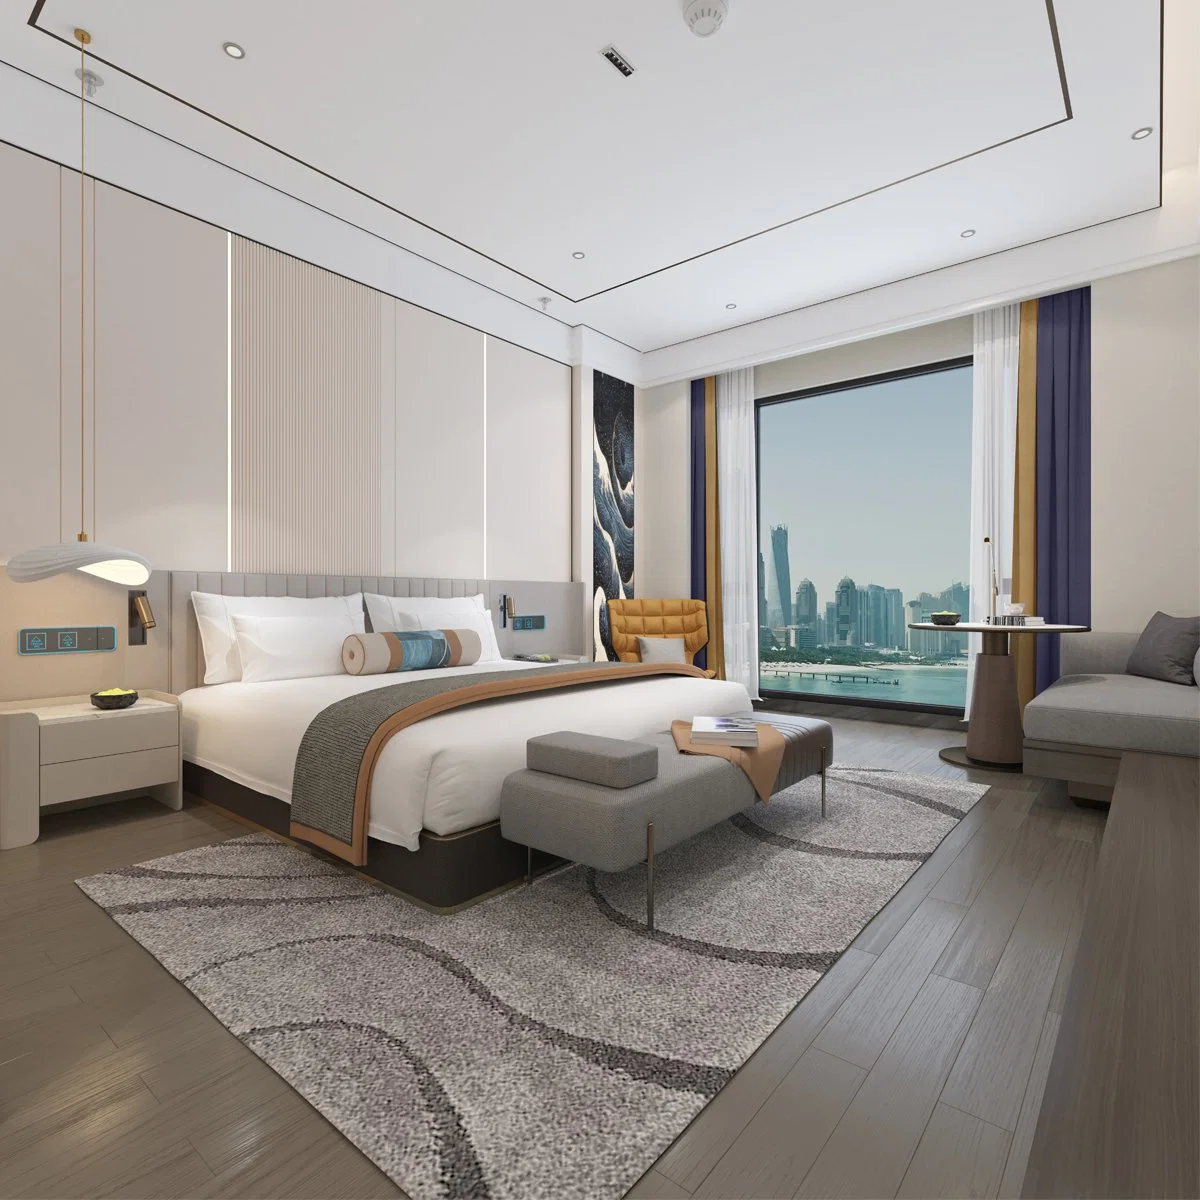 Deluxe cinco estrellas Resort SPA Hotel de alta calidad mobiliario de habitación